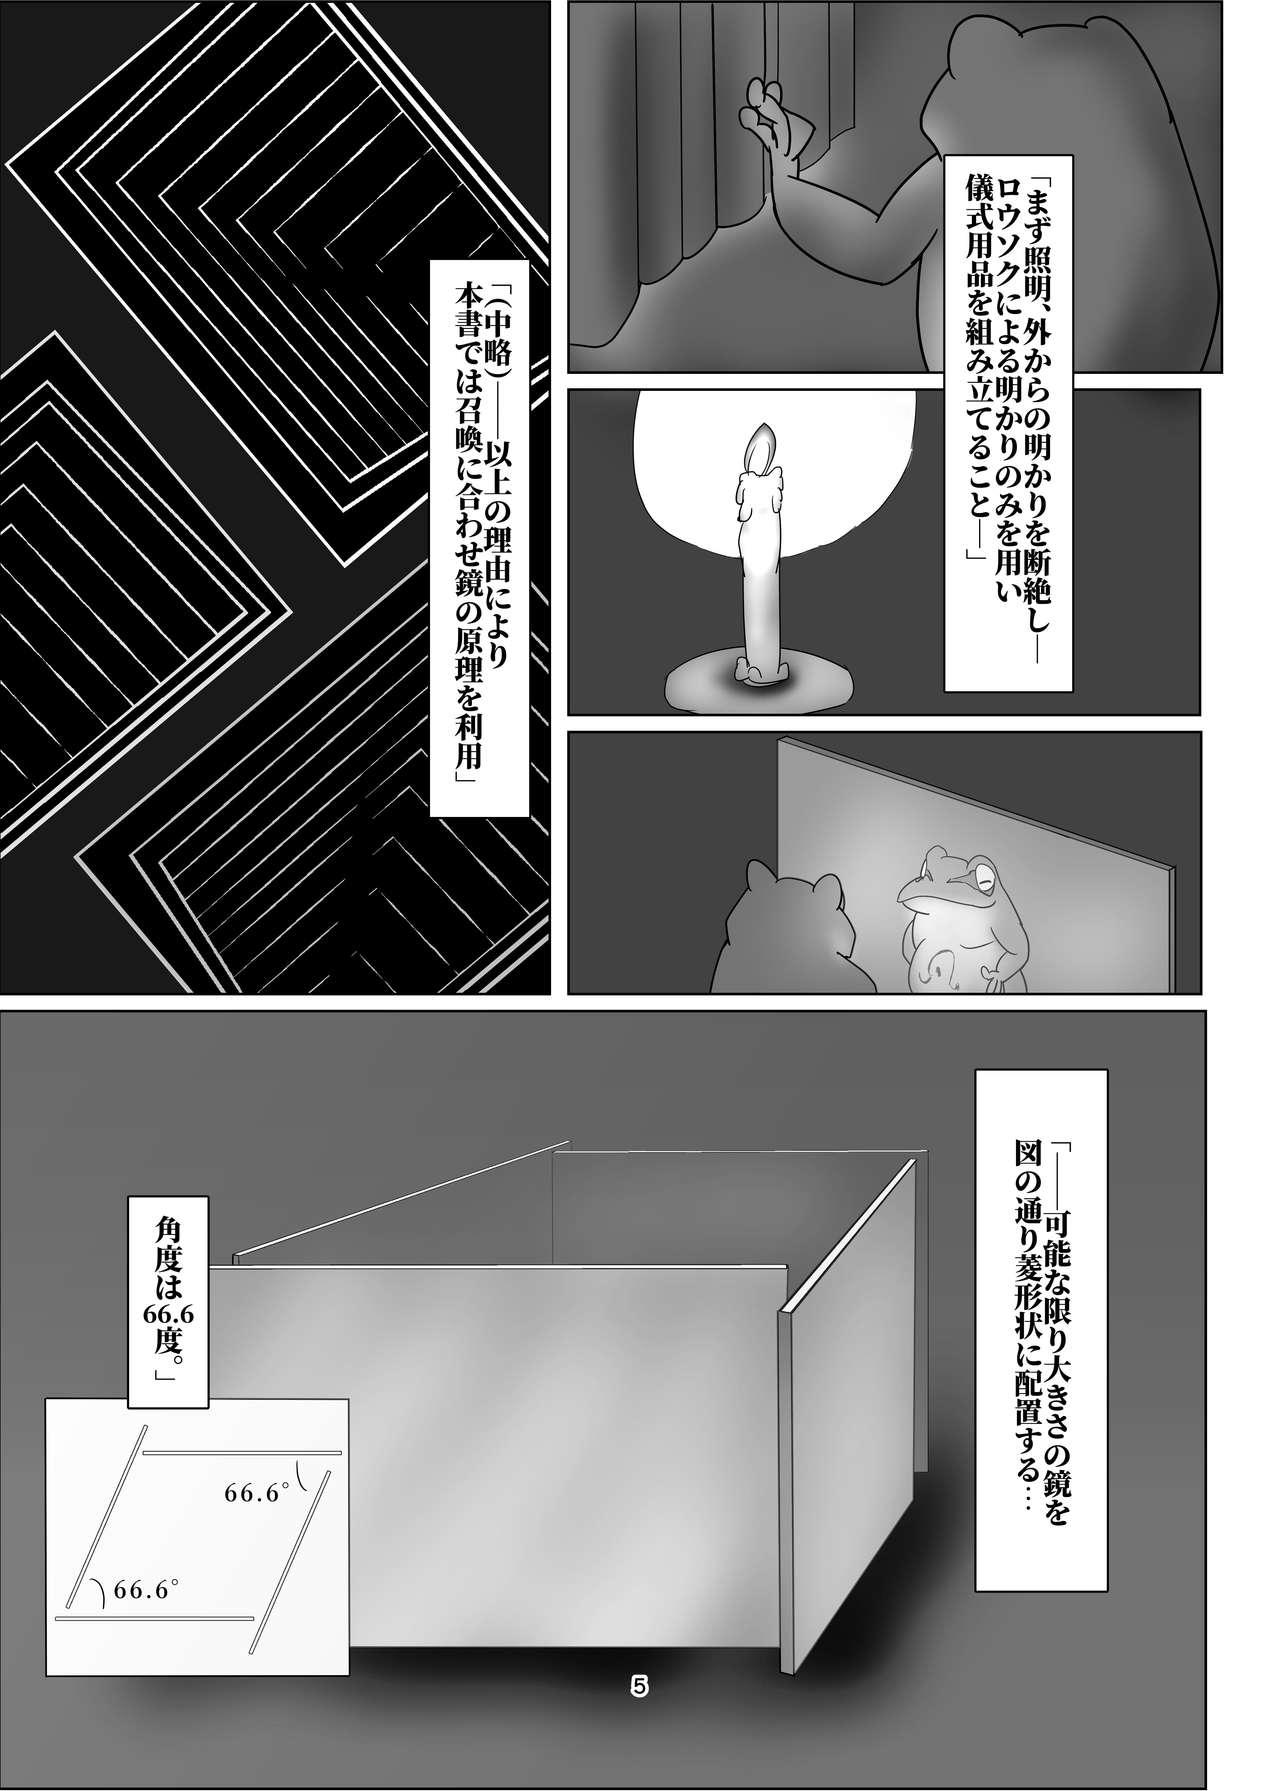  けろほん9 DIABOLOCAL TENTACLES!! Verga - Page 5